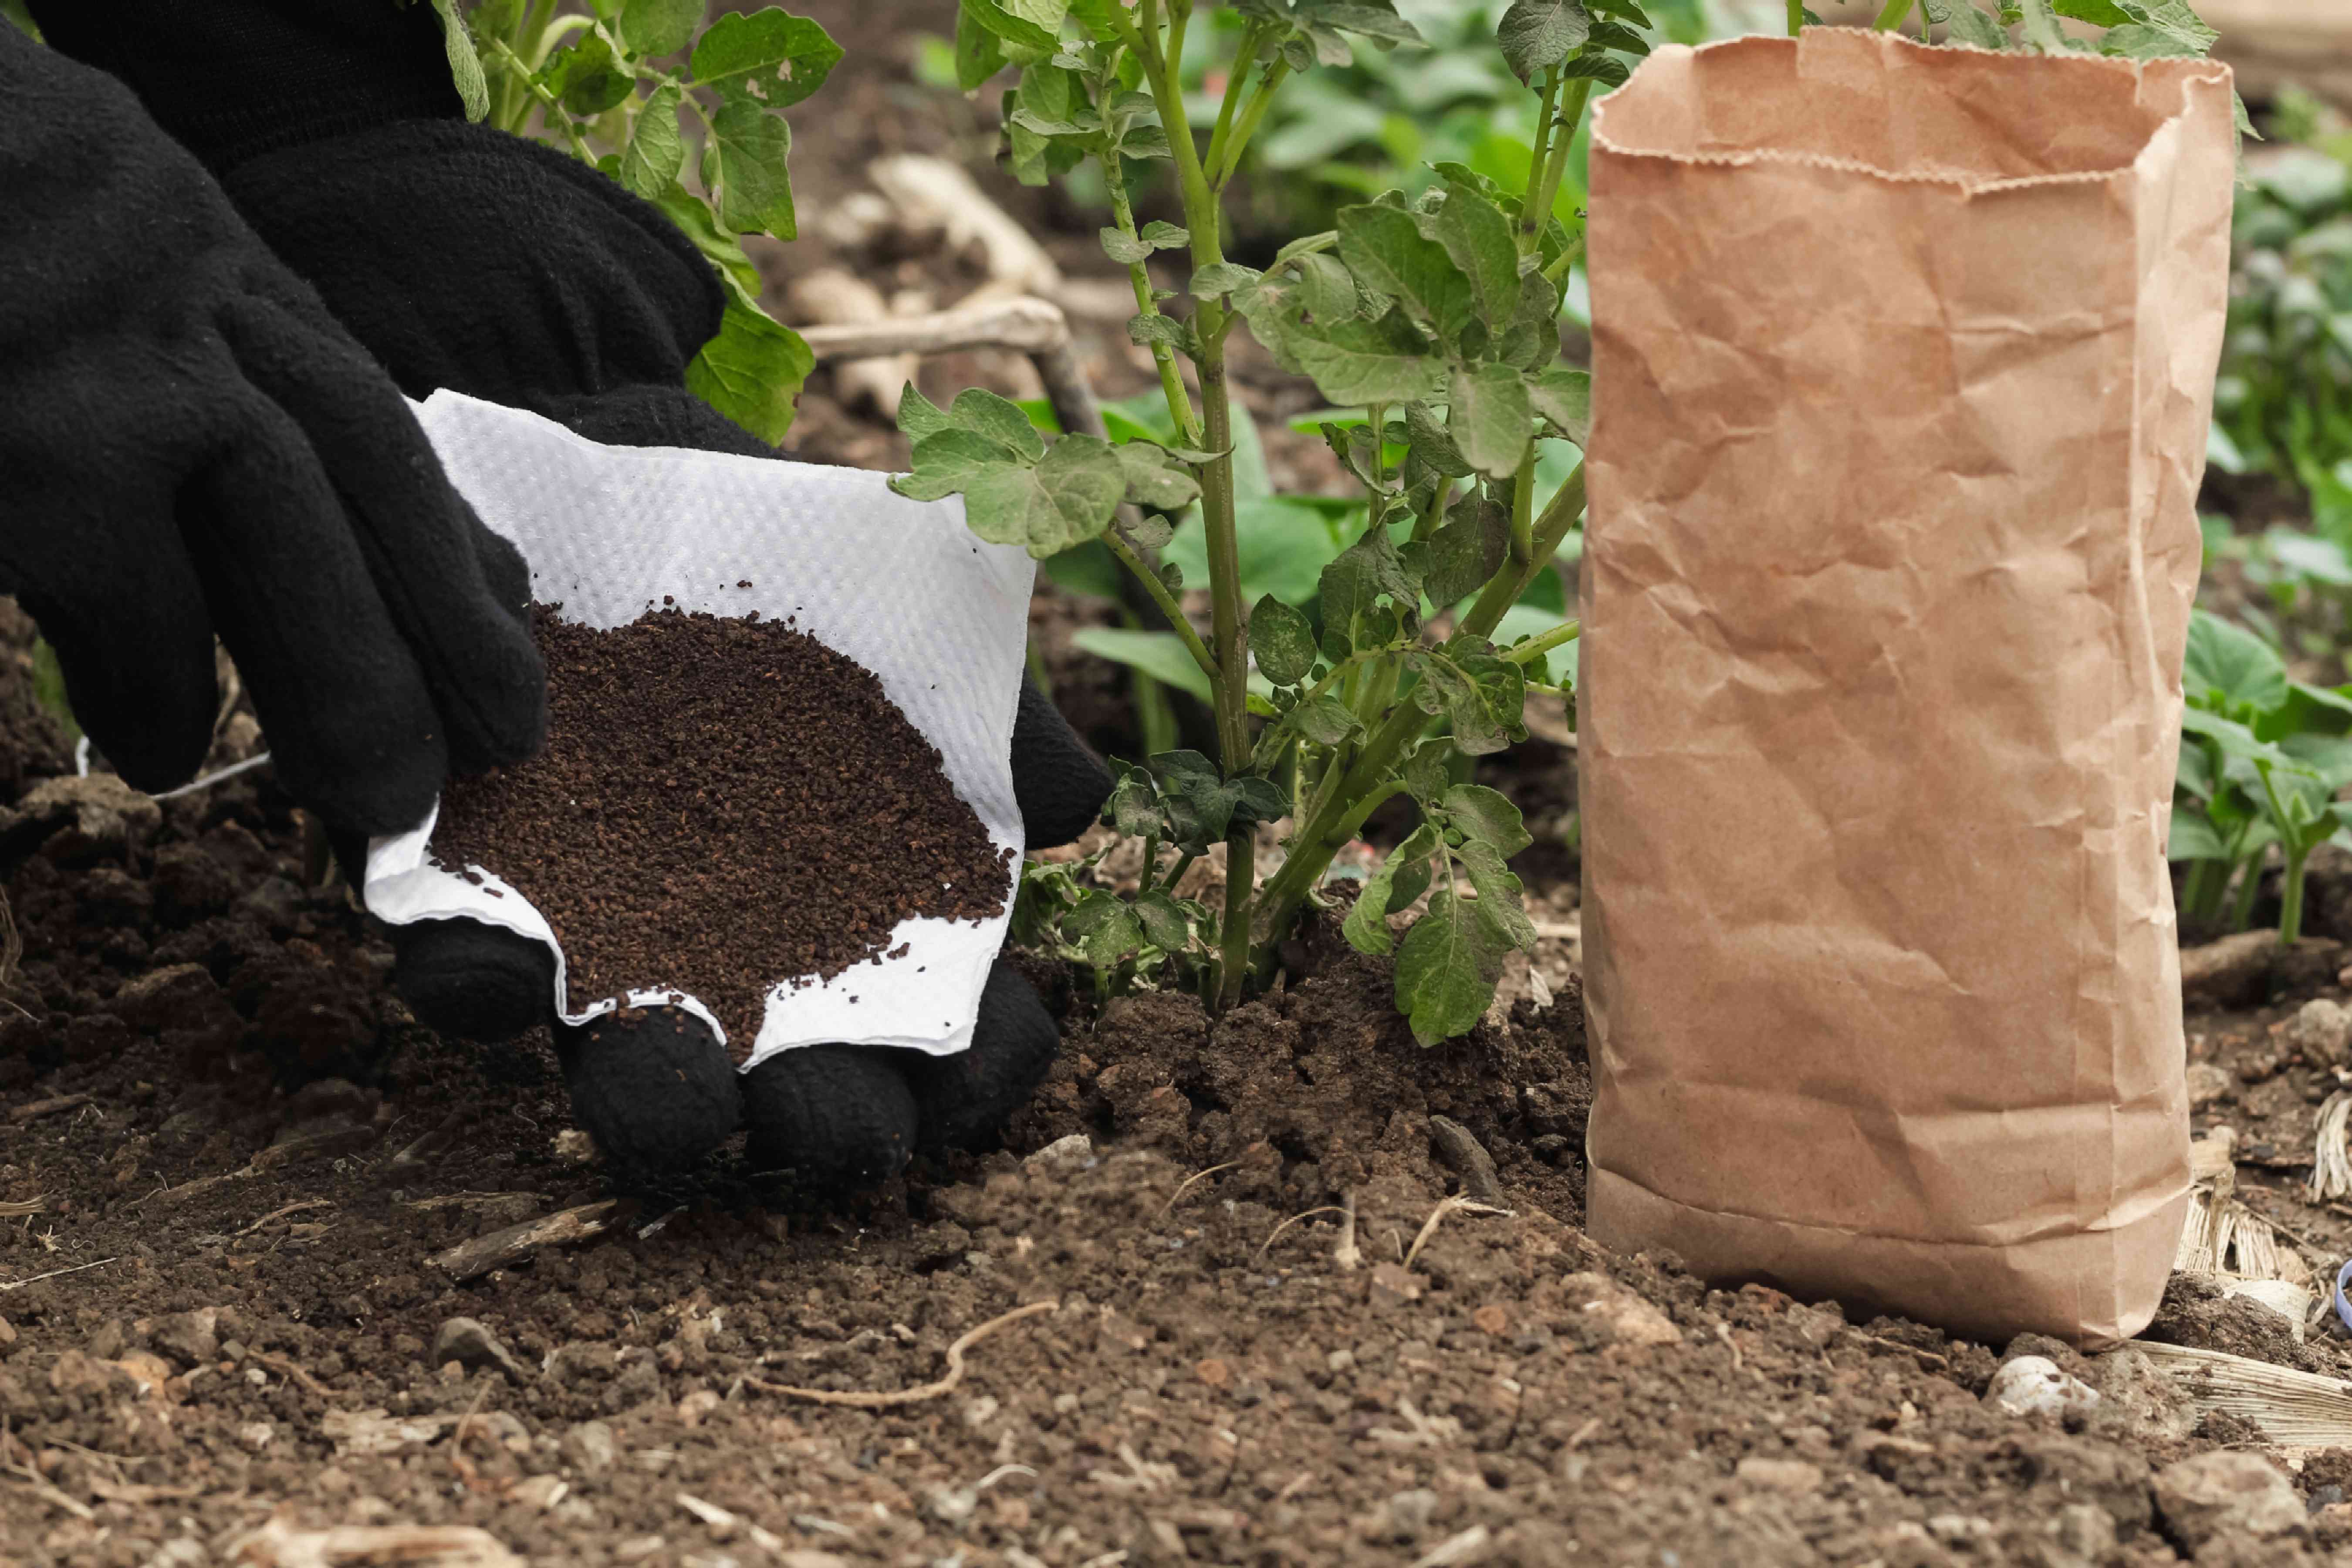 园艺手套中的手在地面上的马铃薯植物中增加了咖啡地